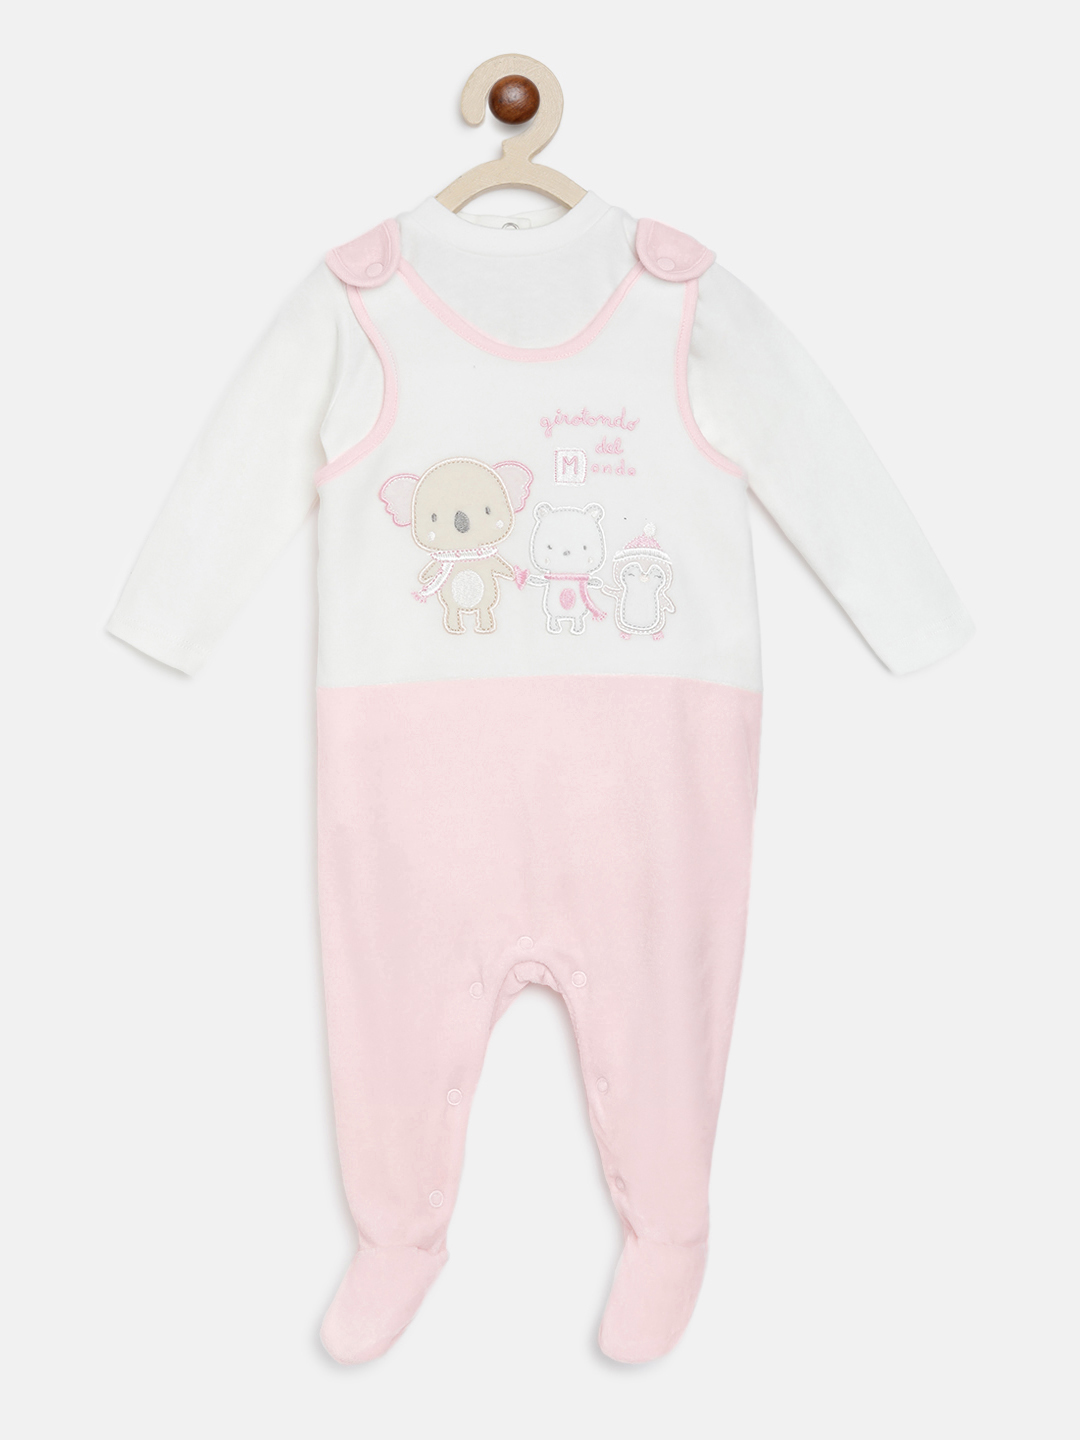 Babysuit - Bodysuit Set  With Applique (2pc)-Pink